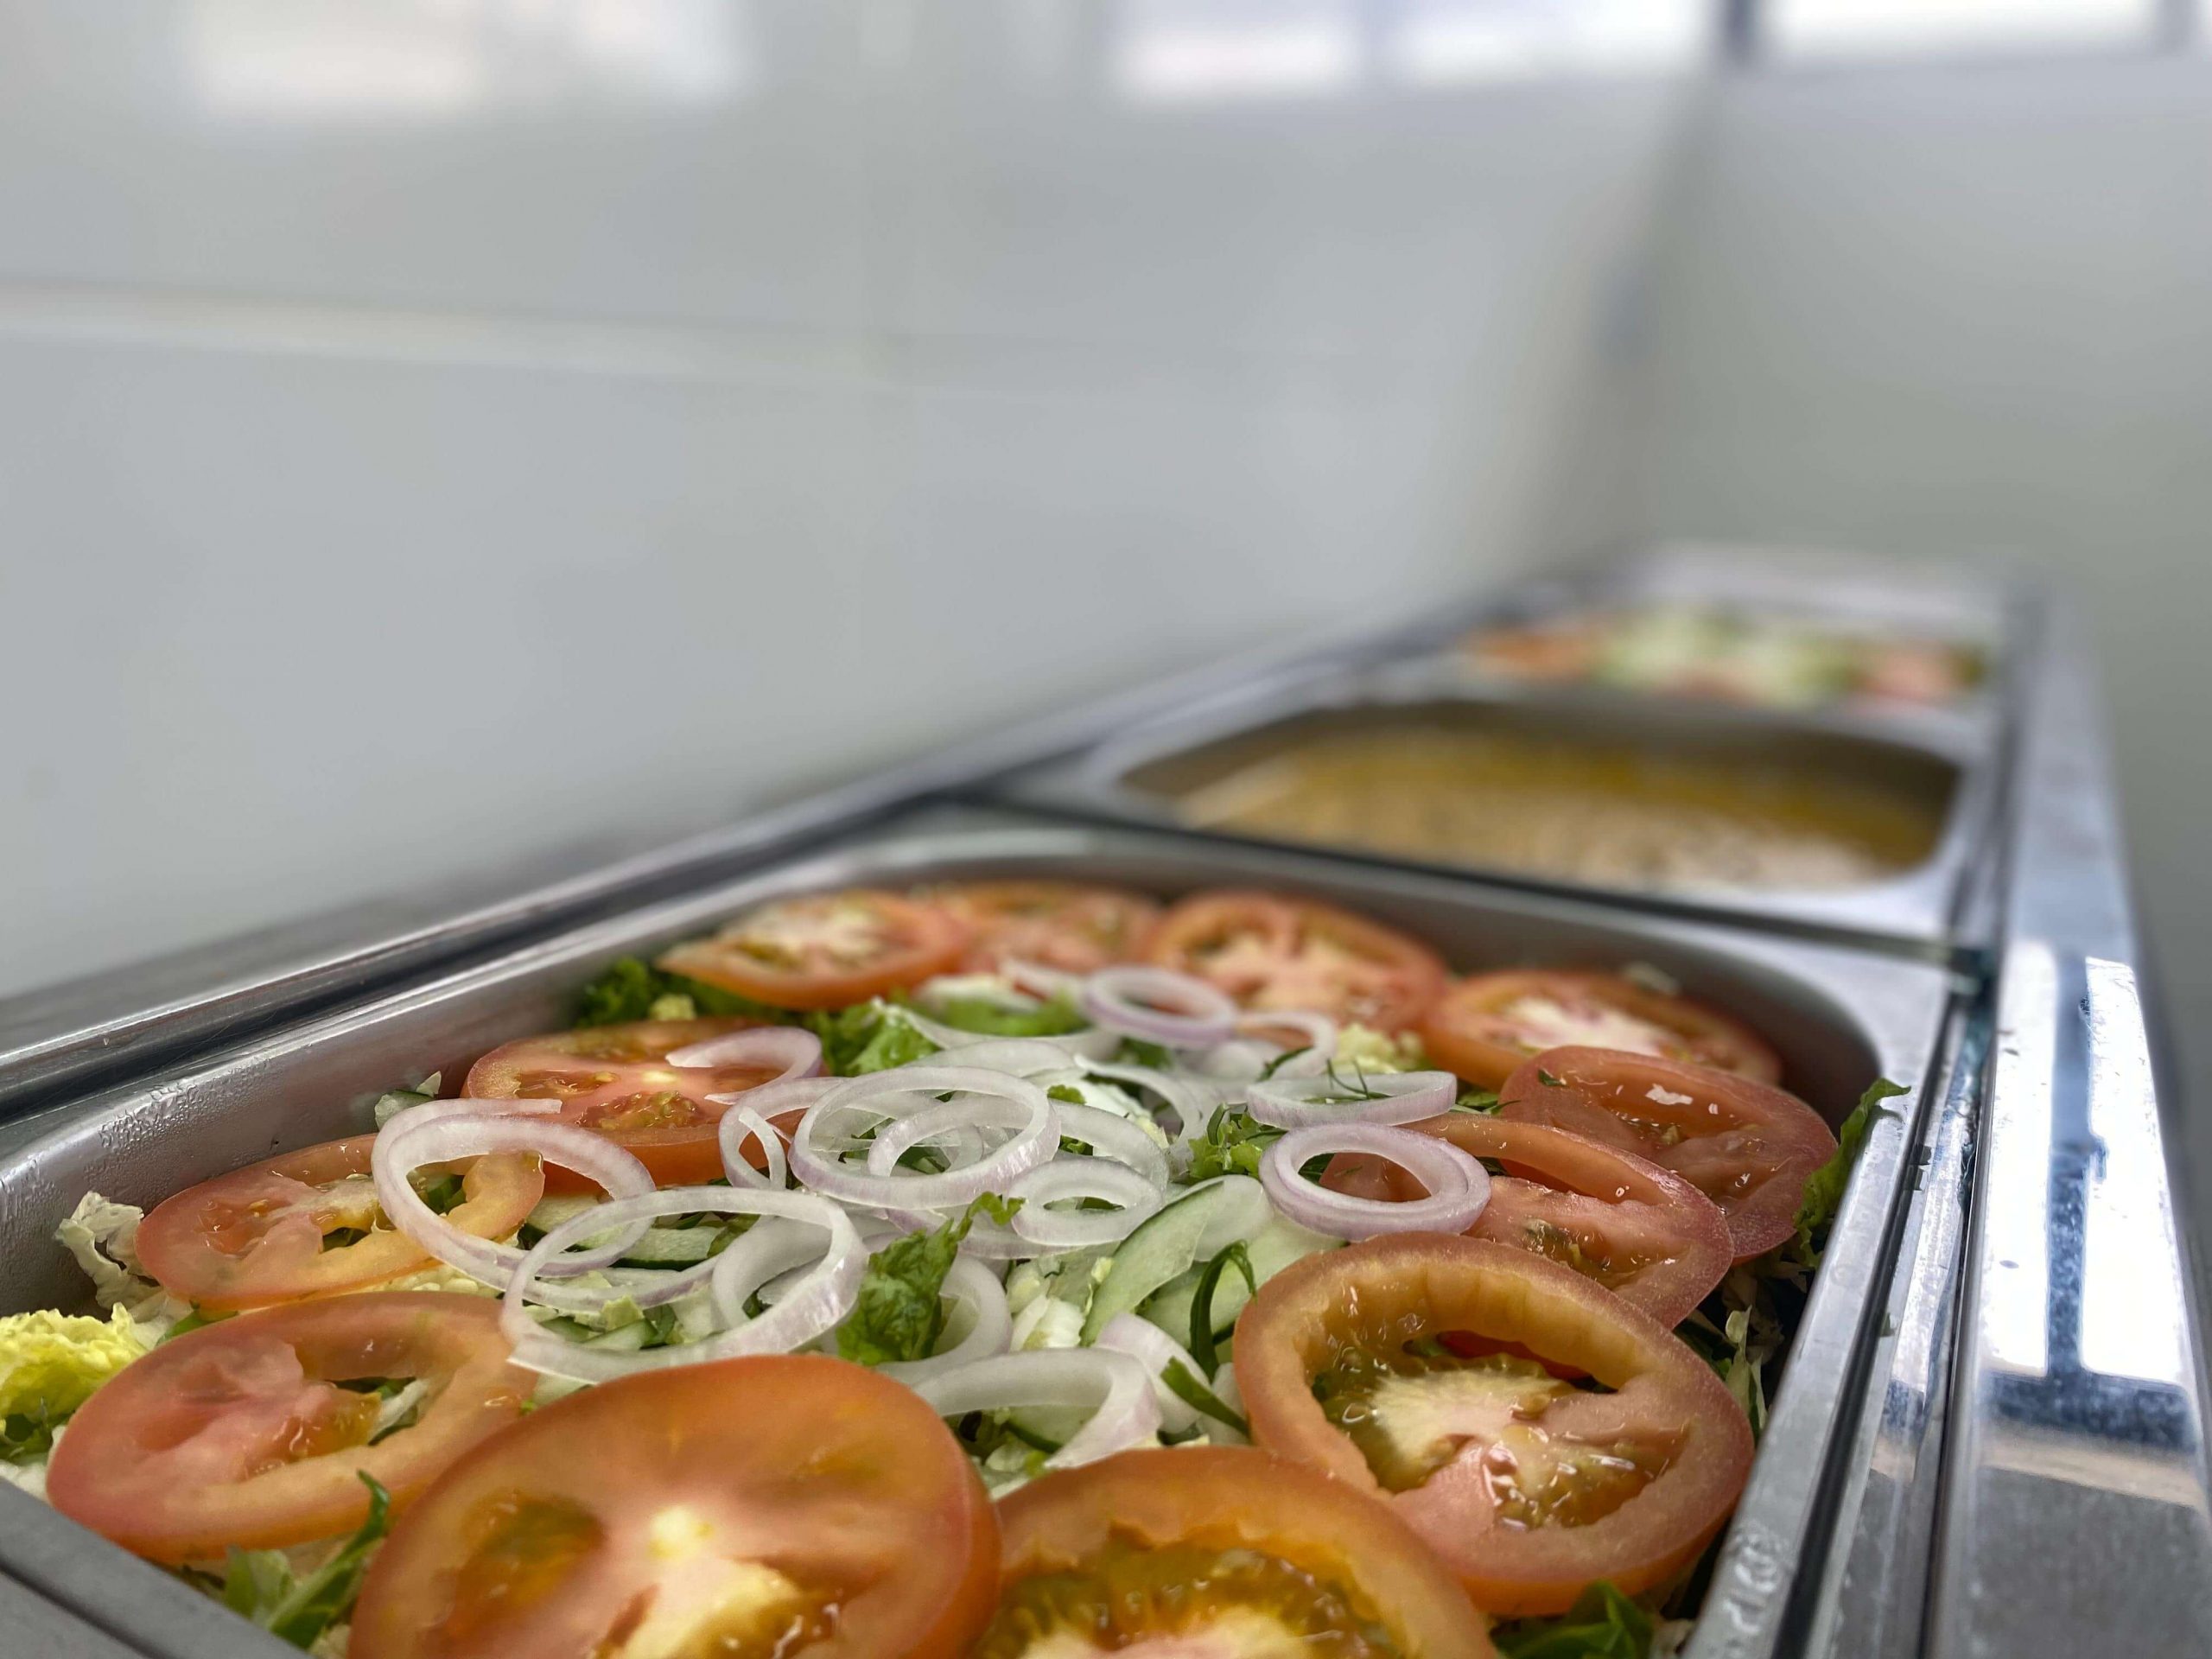 Serviço de Nutrição e Dietética é destaque no Hospital Regional com mais de 900 refeições diárias 10